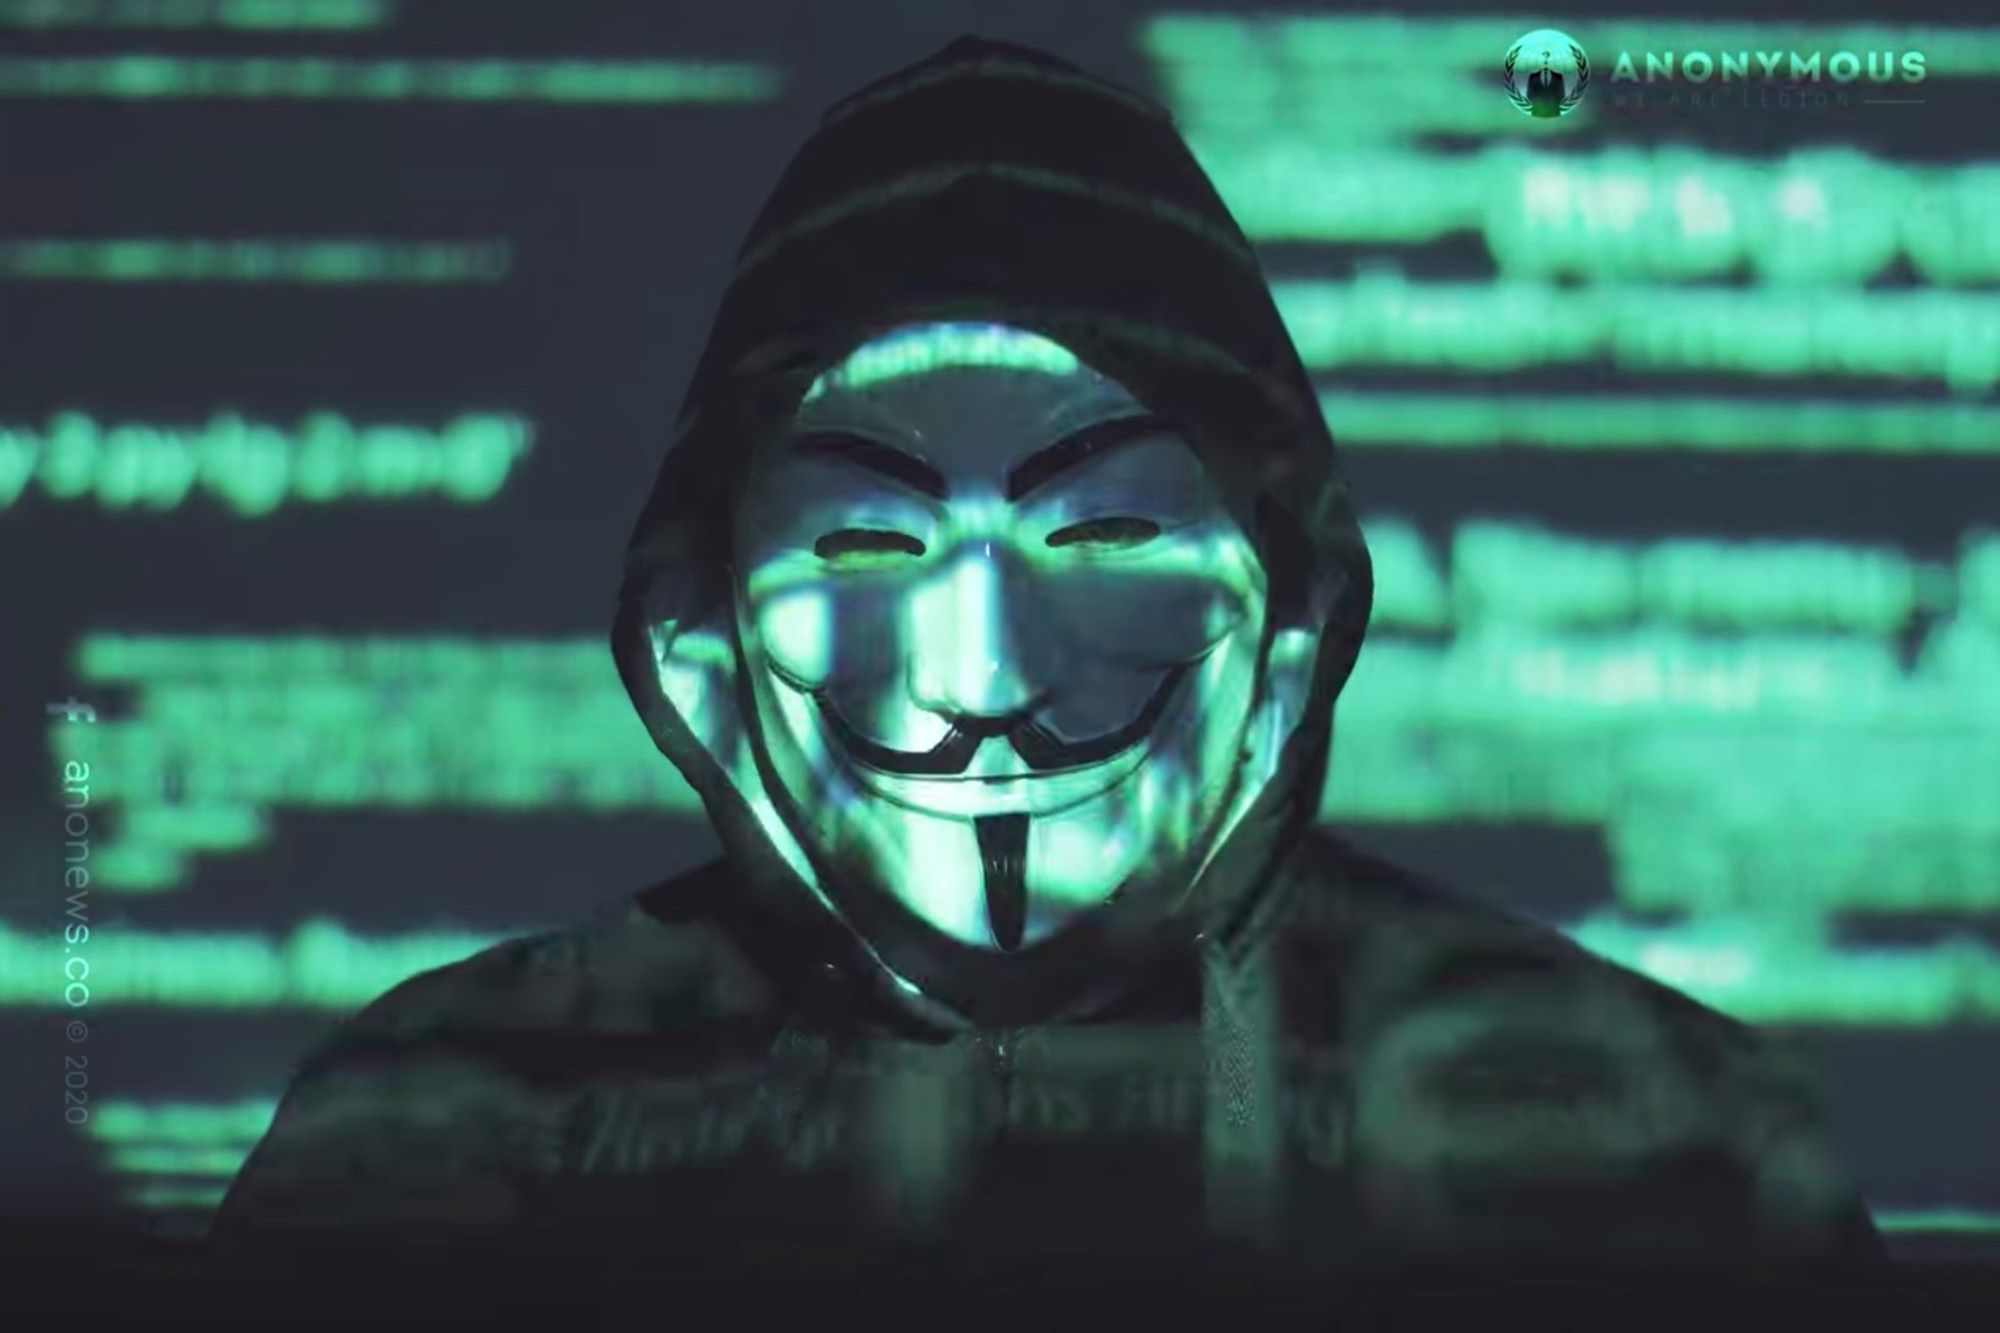 ELON MUSK, amenințat de Anonymous: „Ți-ai întâlnit adversarul. Așteaptă-ne!”